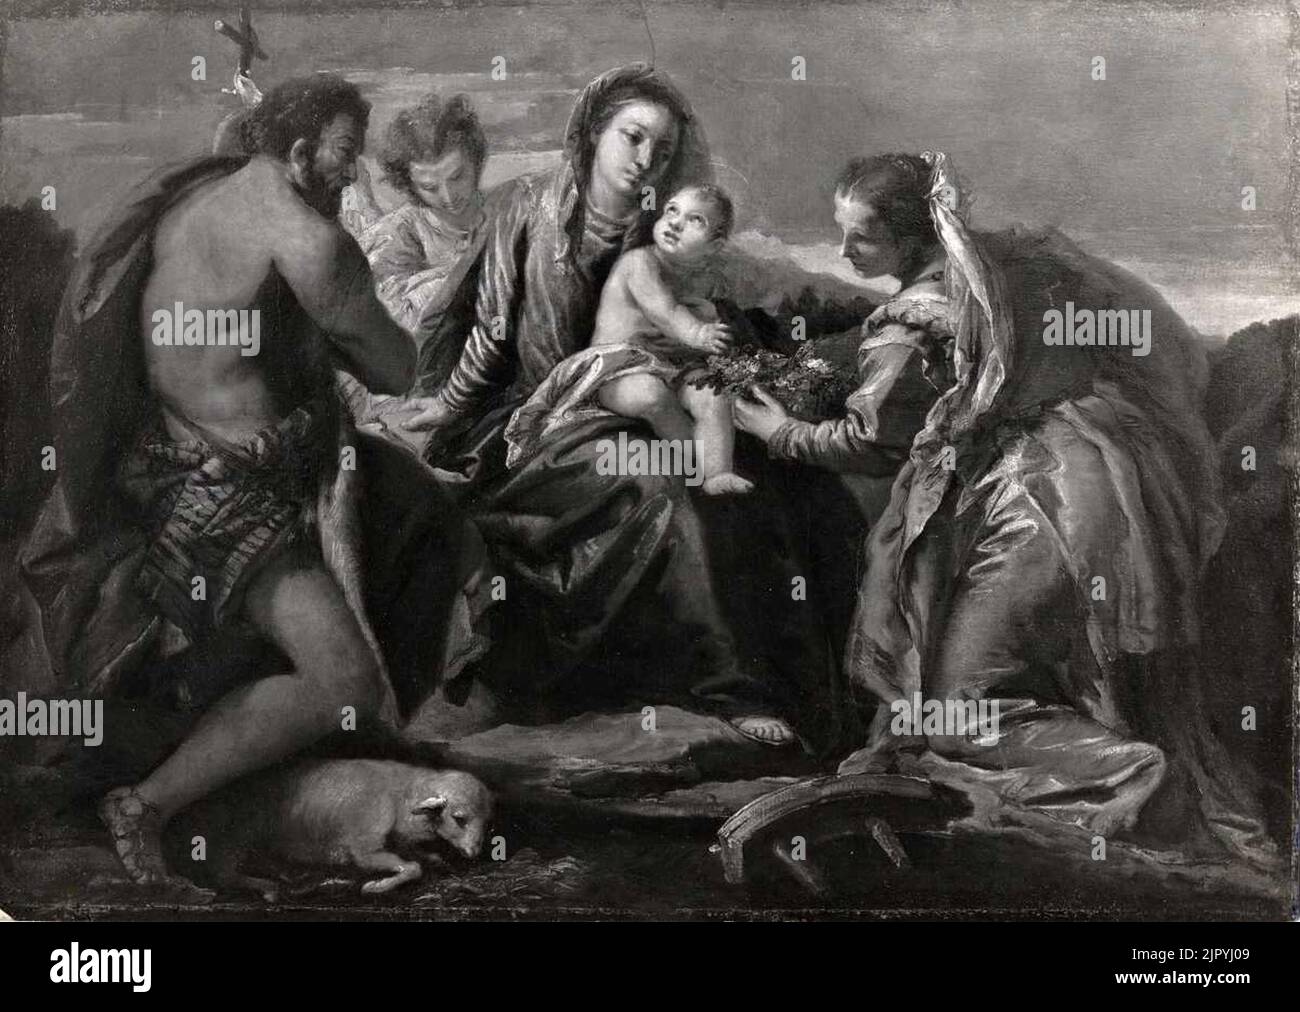 Tiepolo - Pitati - Matrimonio mistico di santa Caterina da Siena alla presenza di san Giovanni Evangelista, 1745 - 1750, Collezione Hausammann Foto Stock